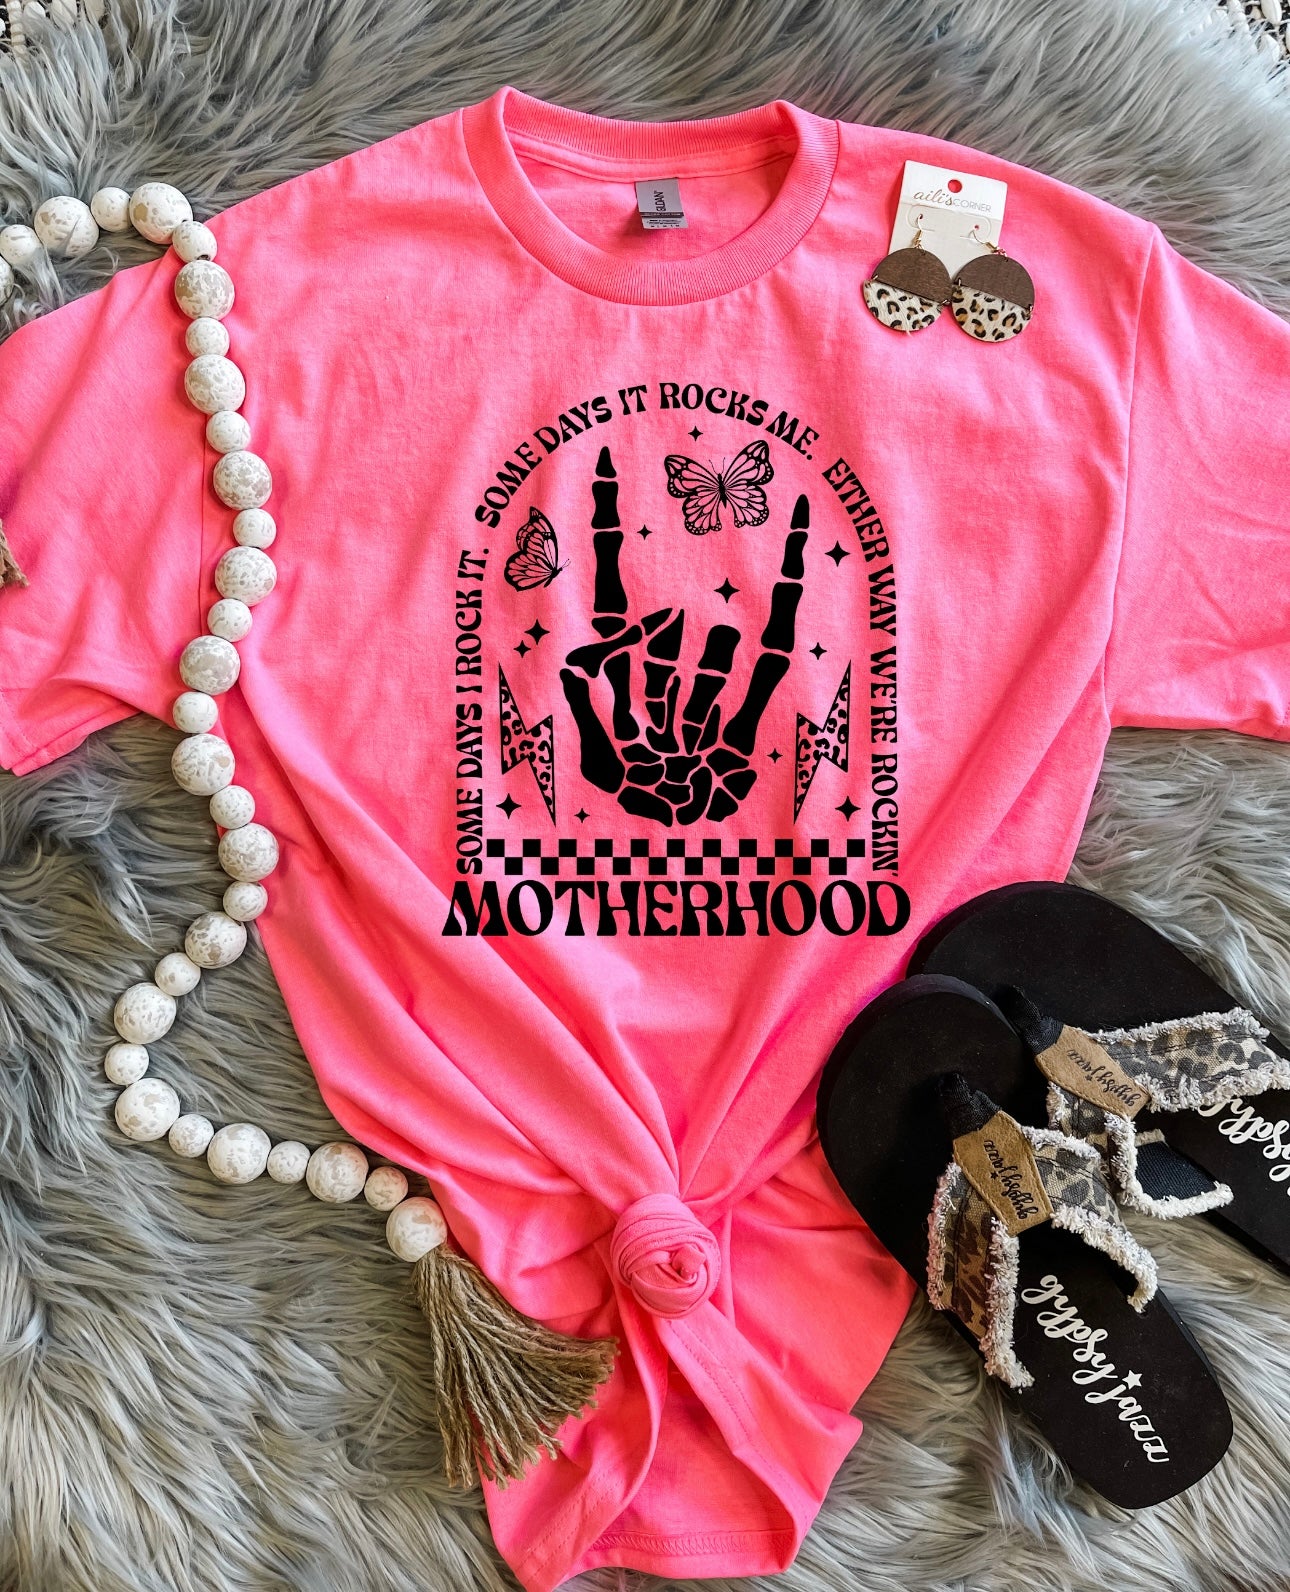 Rocking Motherhood Safety Pink Tee